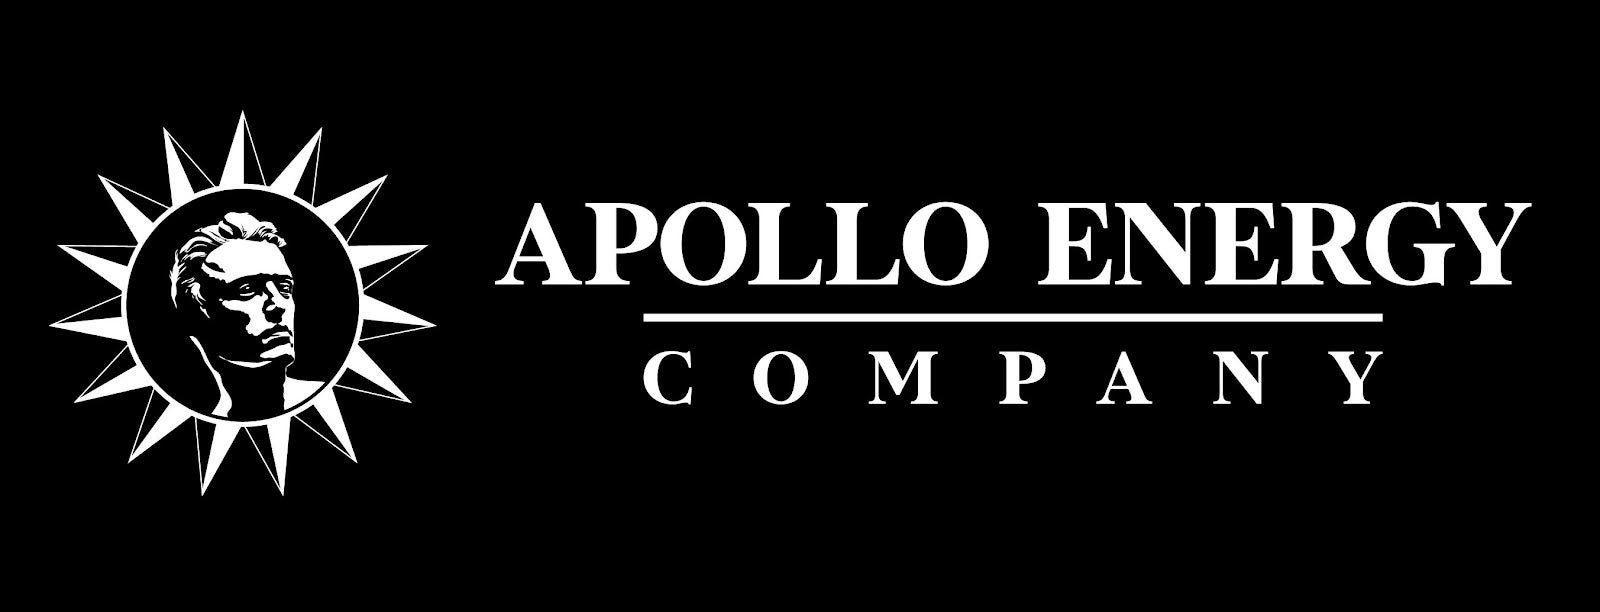 Apollo Energy Company  logo